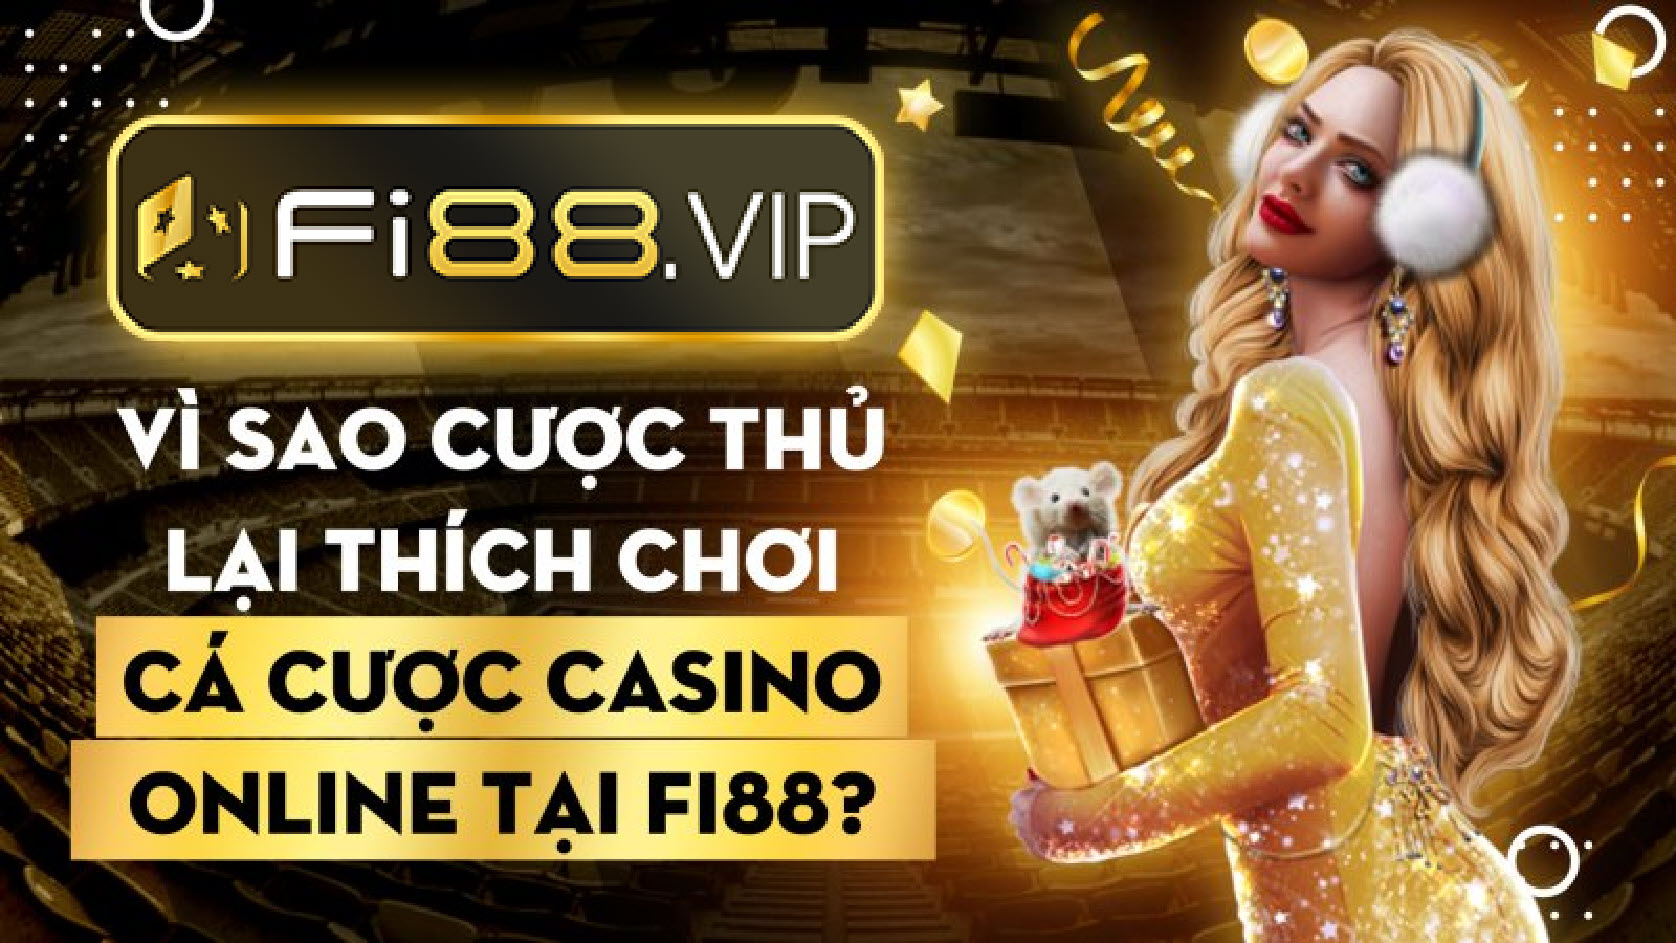 Muốn chơi tài xỉu vui - Chọn ngay Fi88 Casino!